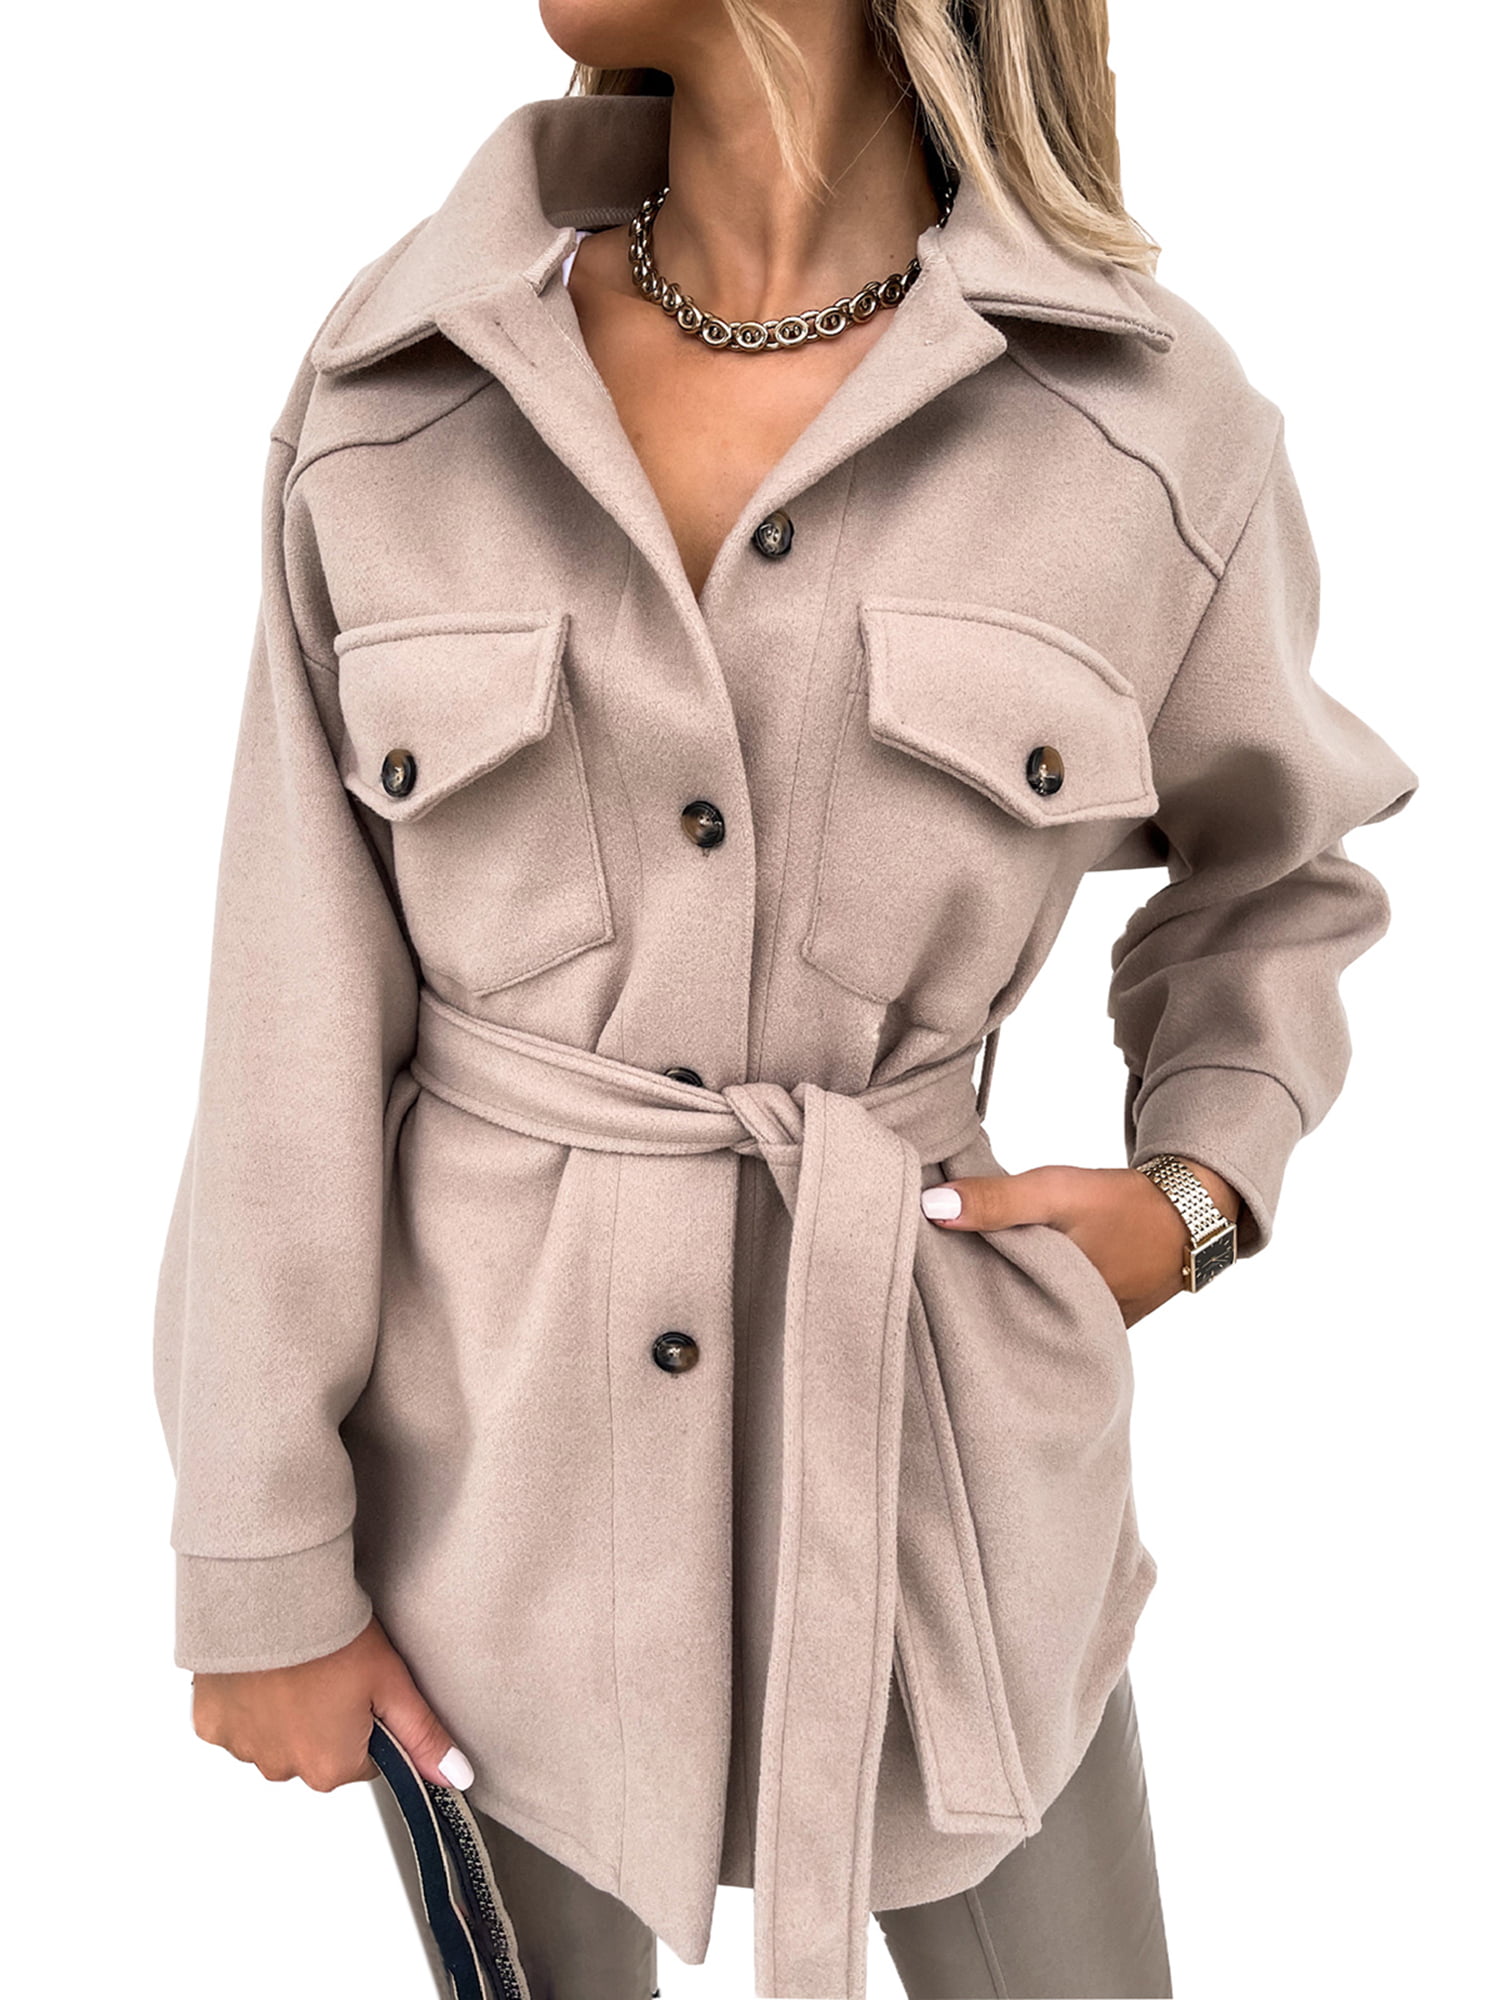 leyay Girls Arctics Full Zip Fuzzy Sherpa Coats Fuzzy Open Front Winter Jacket with Pockets 